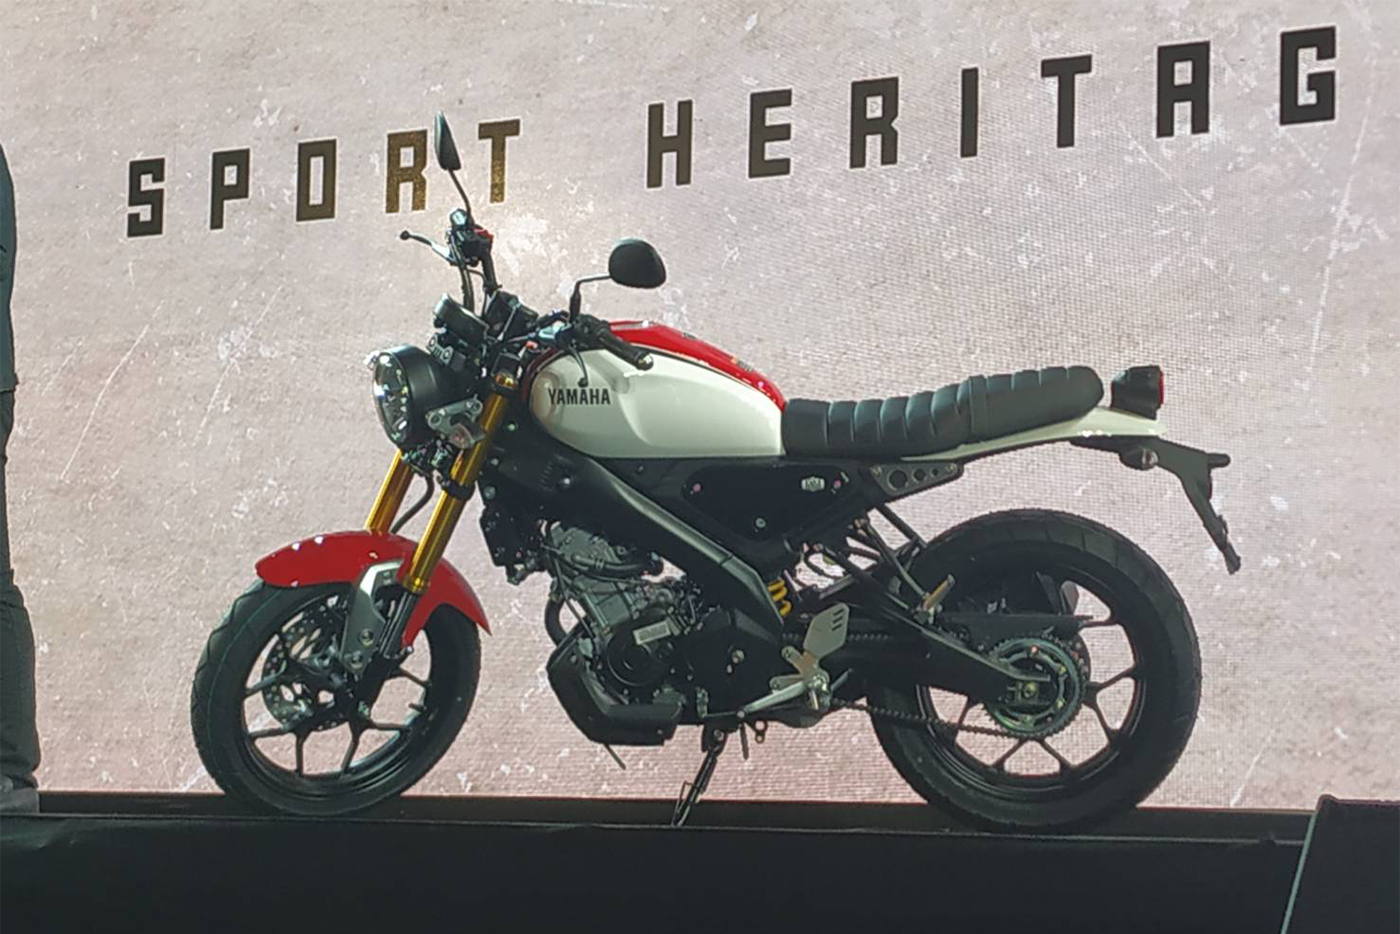 Yamaha XSR 155 2019 sắp về Việt Nam, giá từ 67 triệu đồng